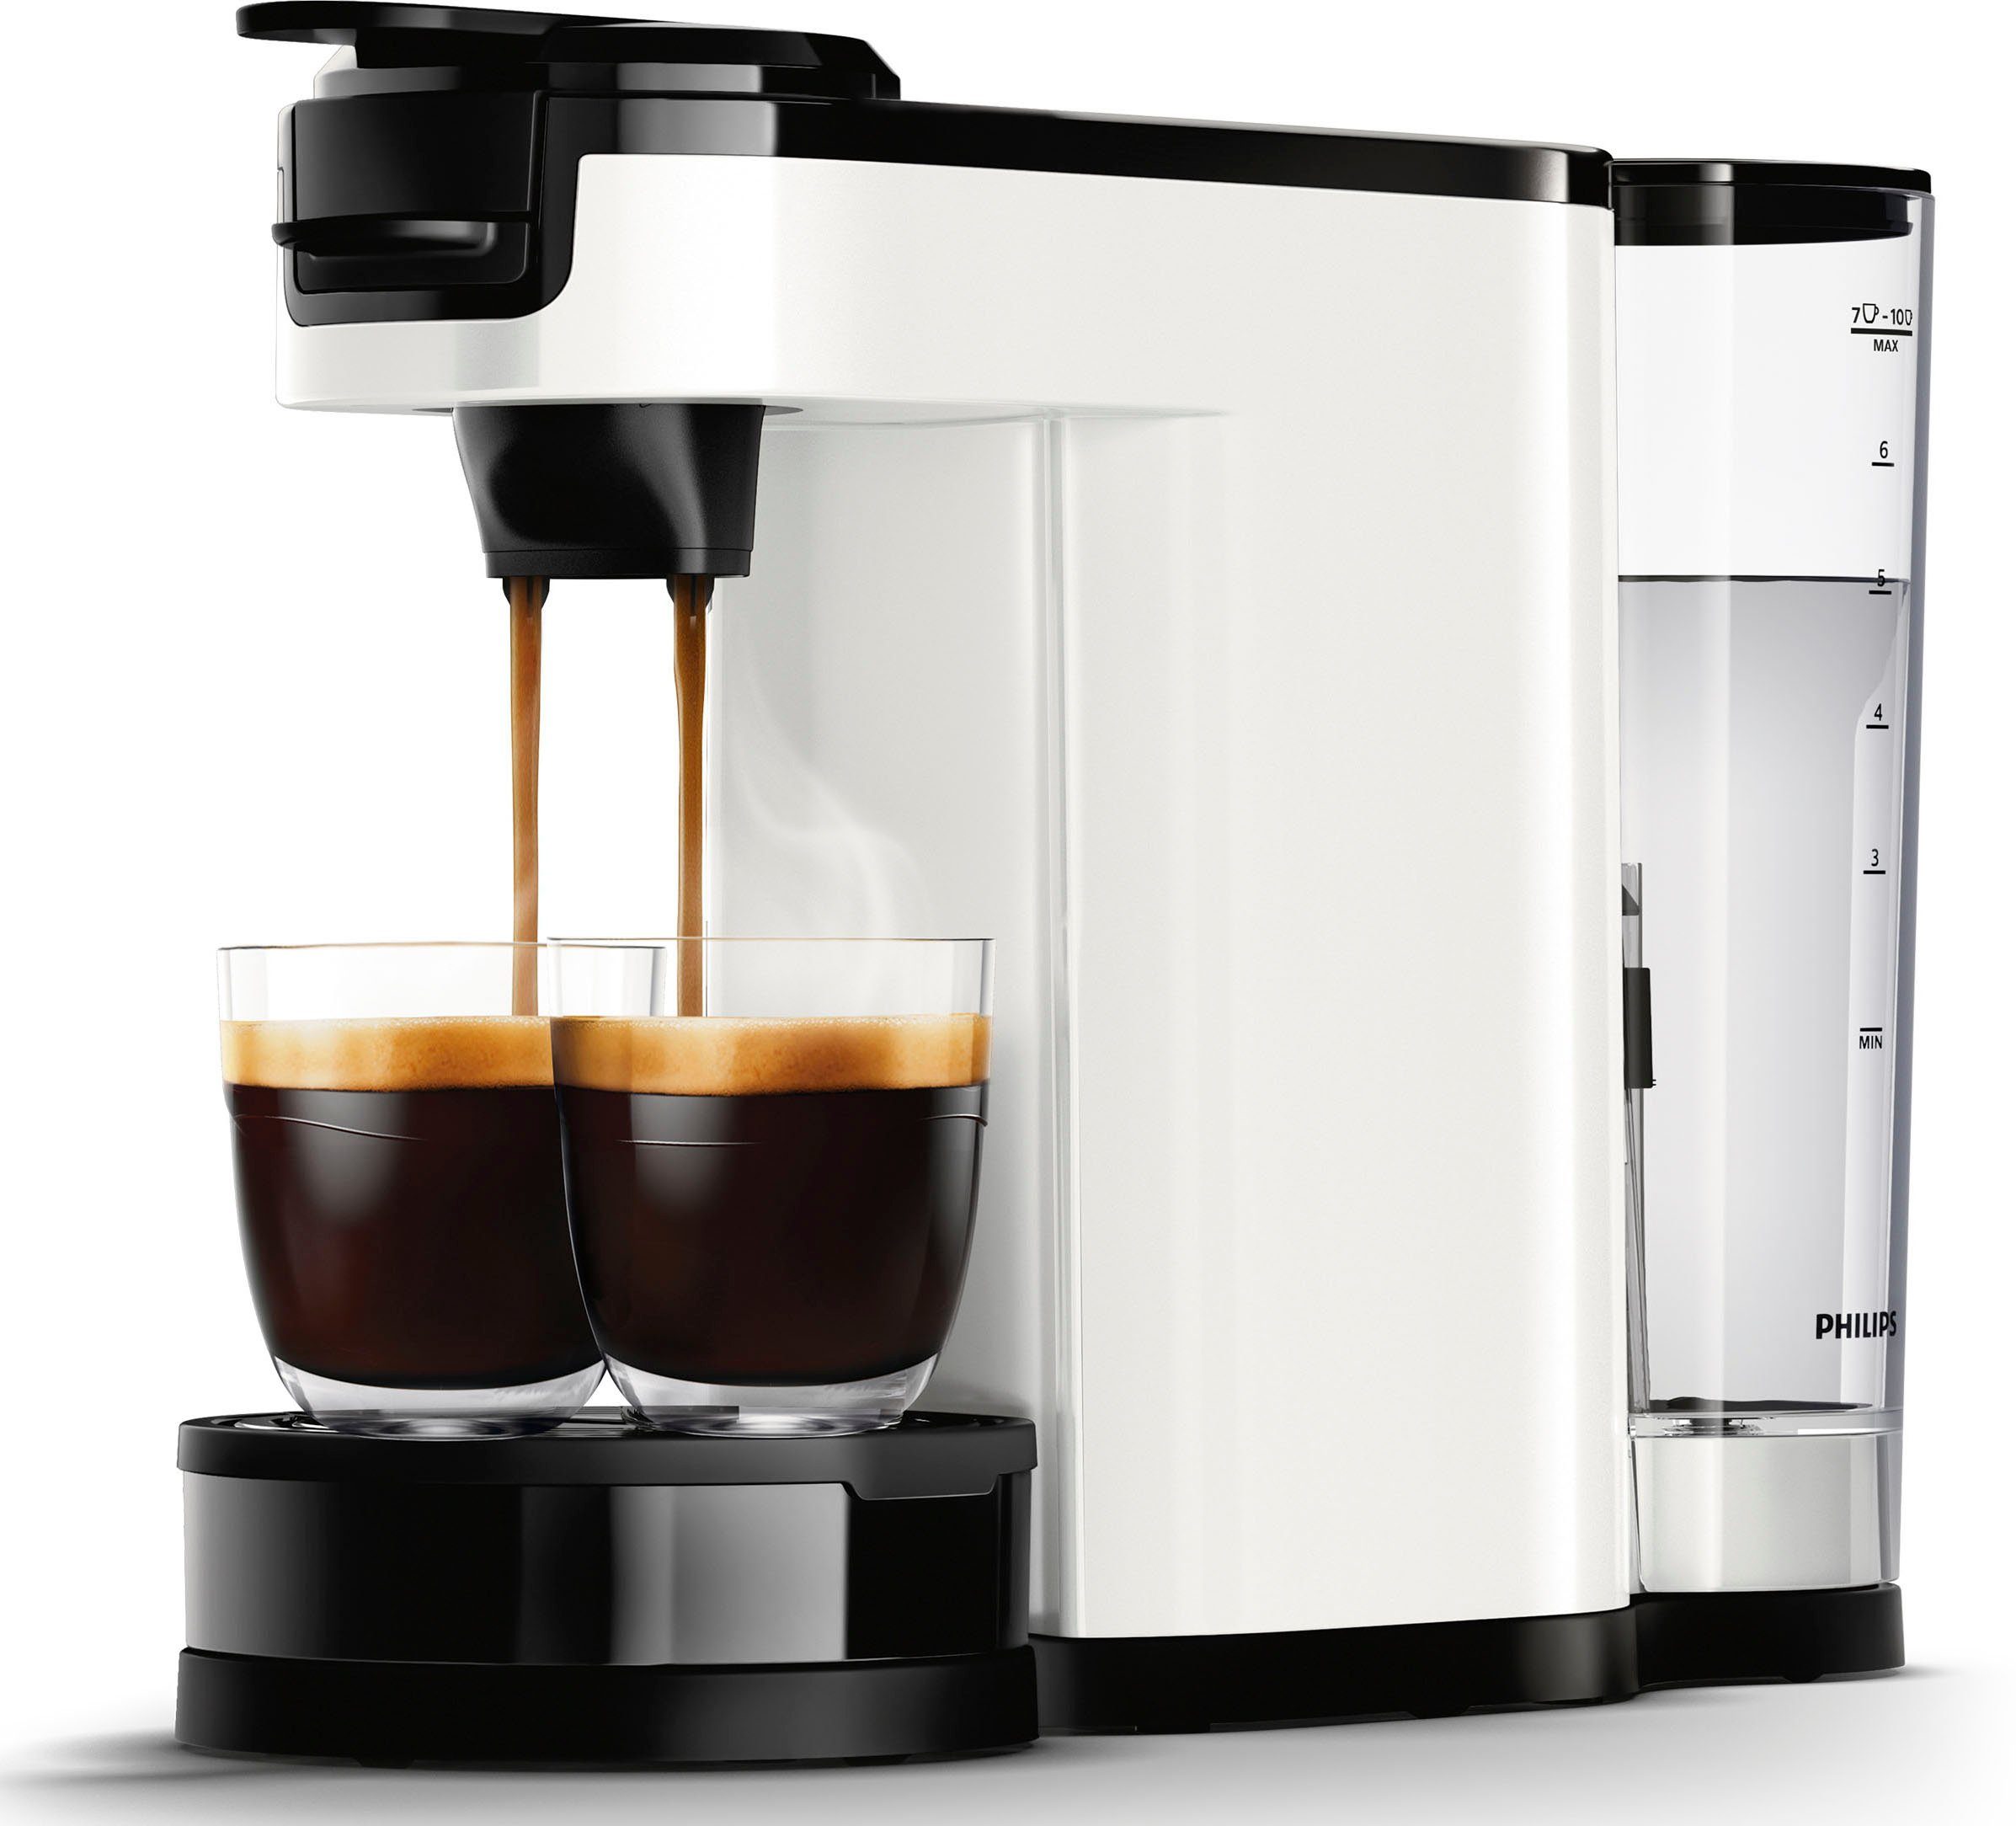 Kaffeepaddose Senseo Philips 1l UVP Kaffeepadmaschine Wert im inkl. € 9,90 HD6592/04, Switch von Kaffeekanne,